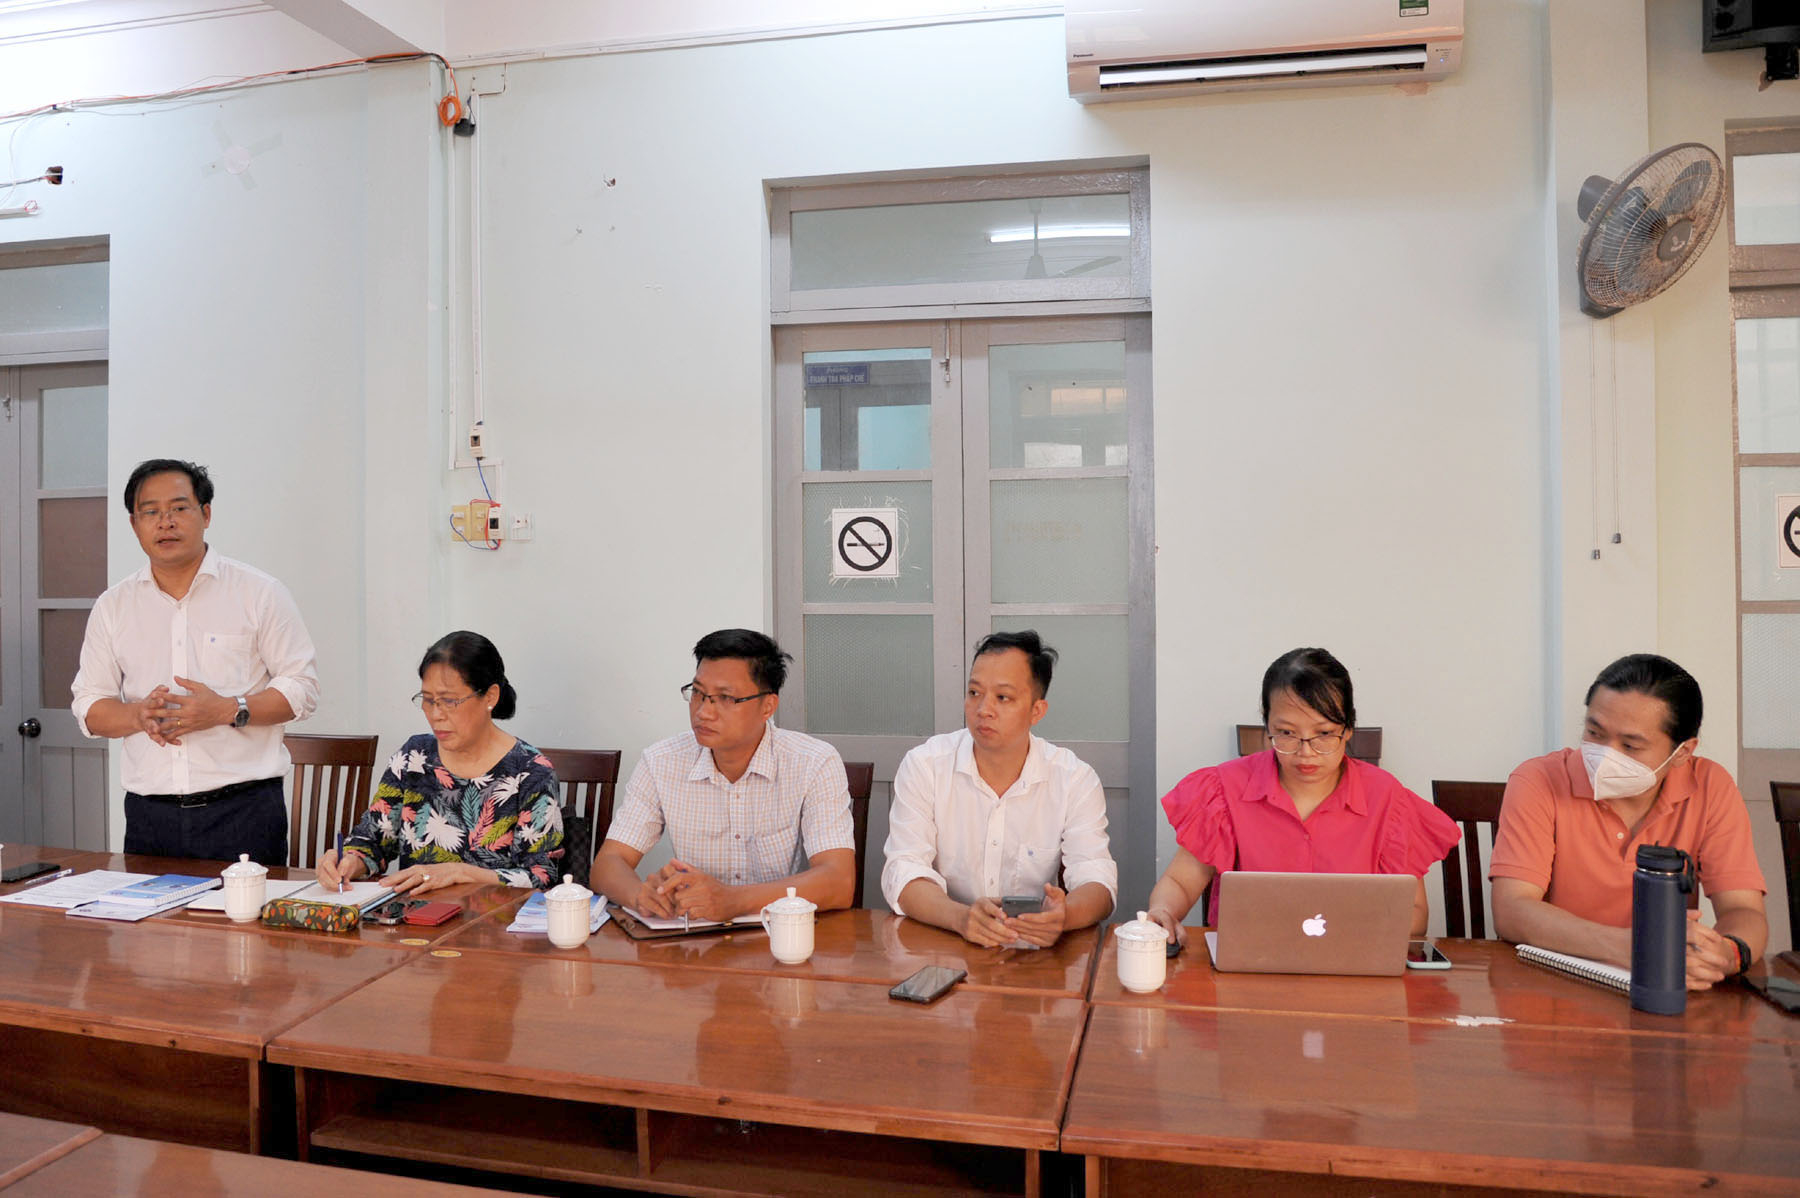 Đoàn công tác của VASEP trao đổi về công tác triển khai chống khai thác IUU ở Phú Yên. Ảnh: Anh Ngọc.